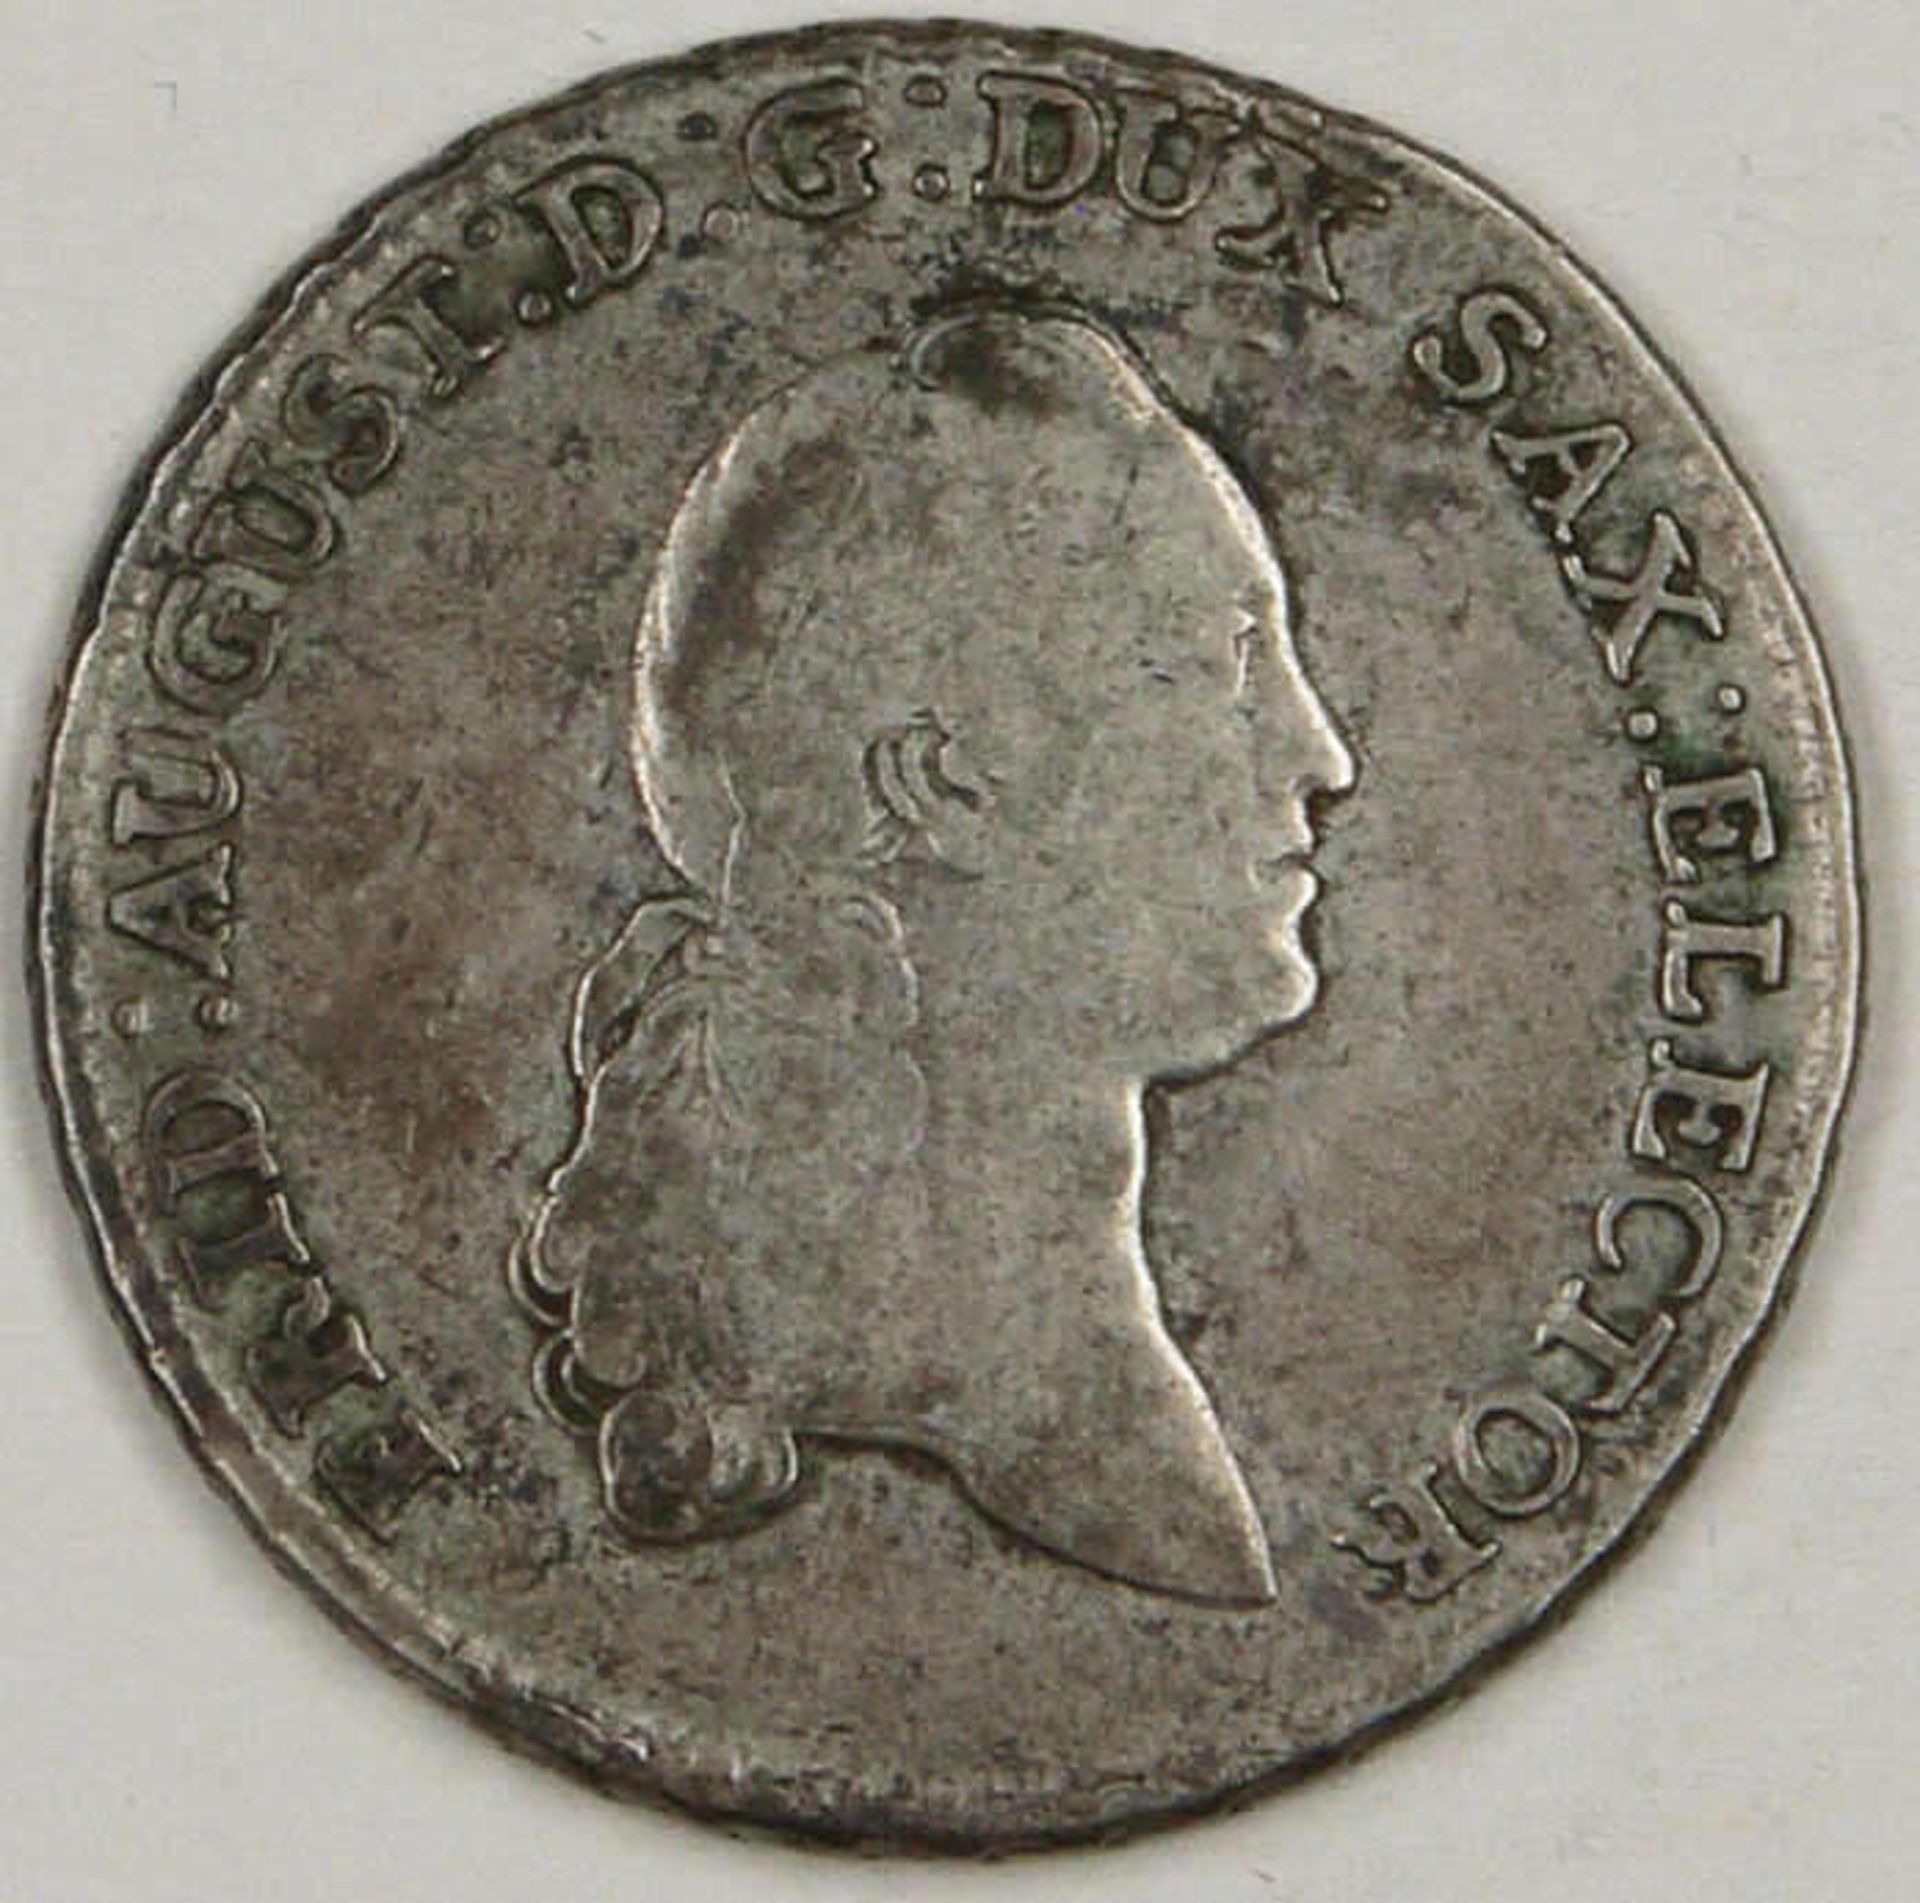 Sachsen-Albertinische Linie 1774, 2/3 - Taler, August-Friedrich III. Silber. Erhaltung: s.Saxony-